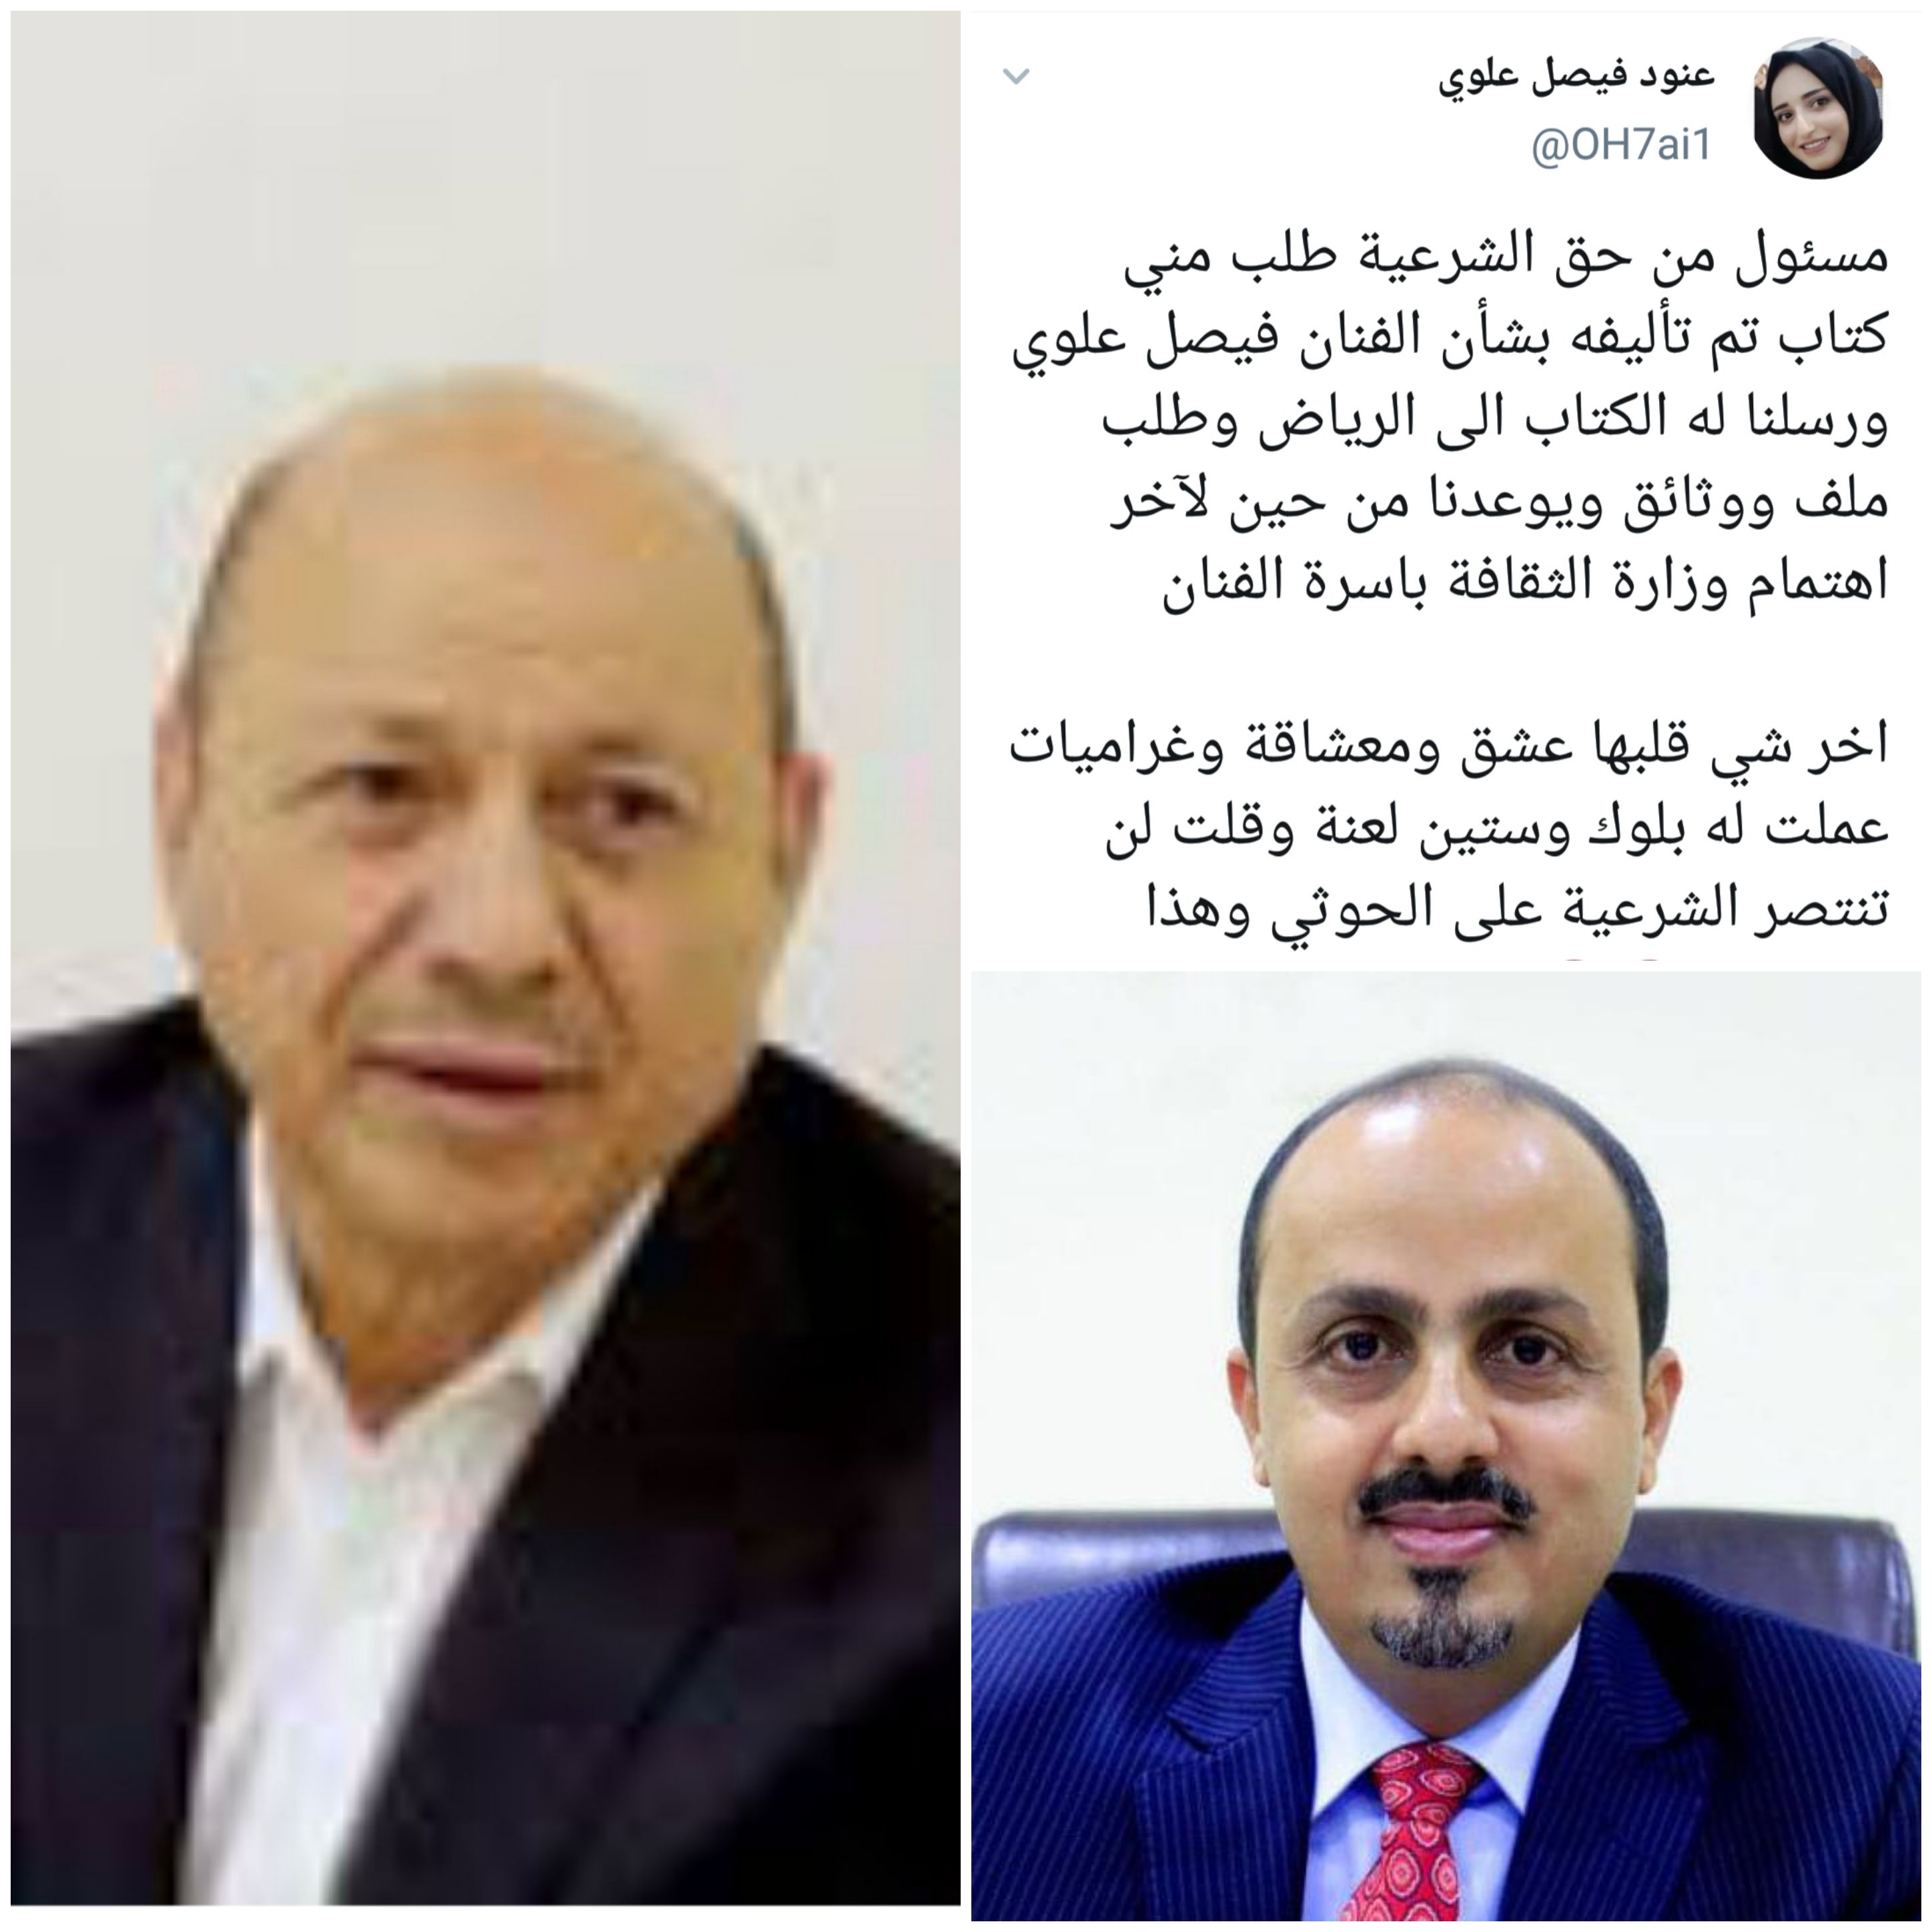 الوزير الارياني : الرئيس هادي سيقيل الوزيرين الميسري وقباطي لضلوعهما في التحرش بإبنة فنان اليمن